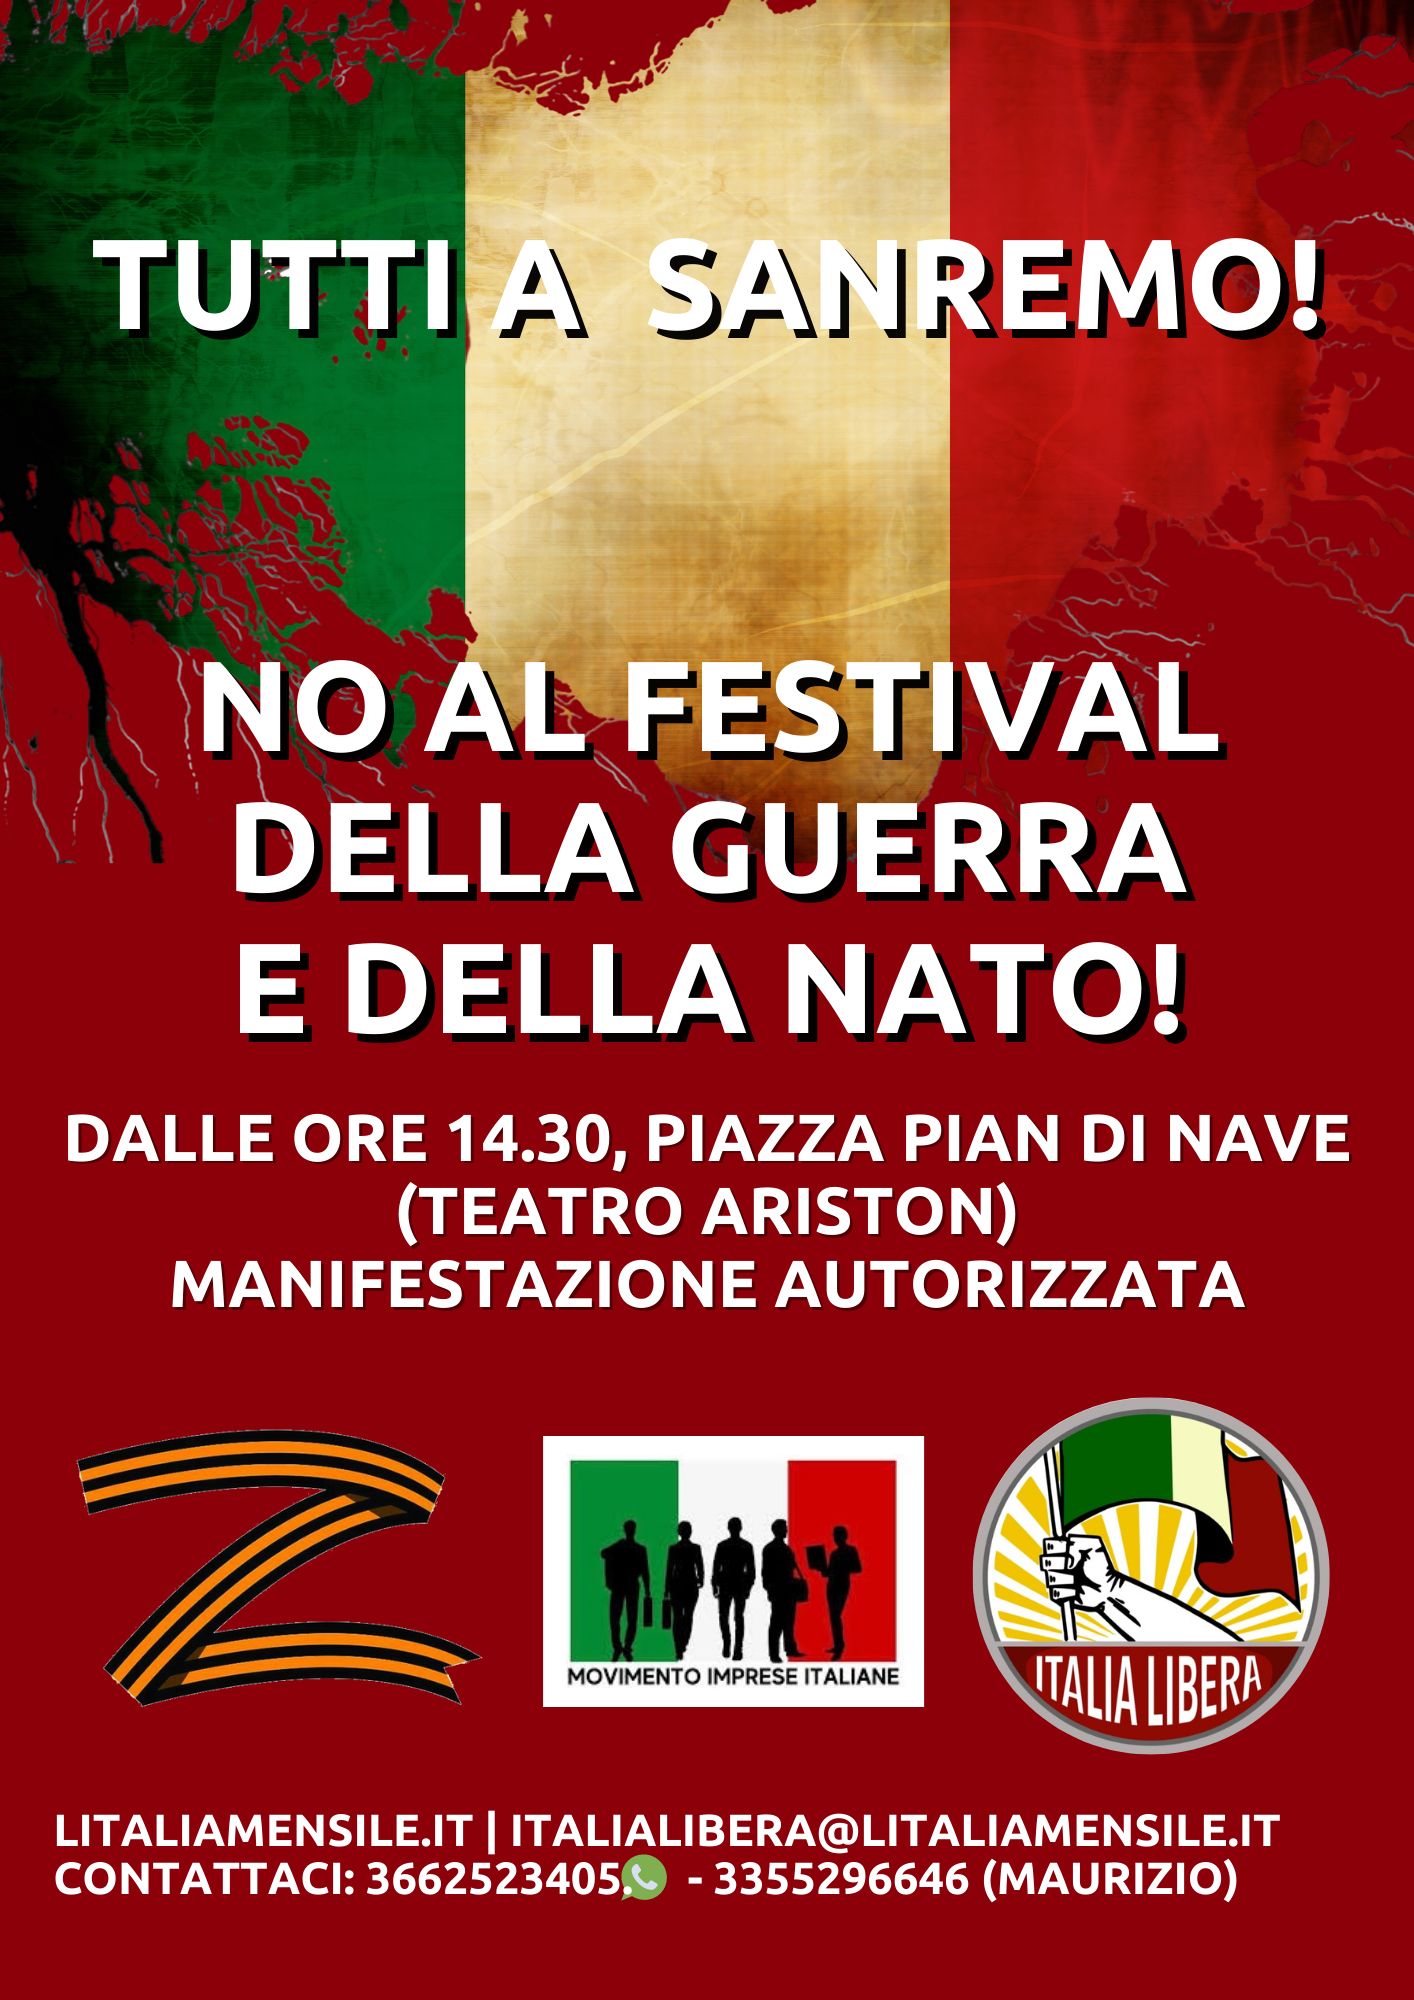 CARLA PERONI (SEGRETARIO NAZIONALE ITALIA LIBERA): SABATO SAREMO A SANREMO!